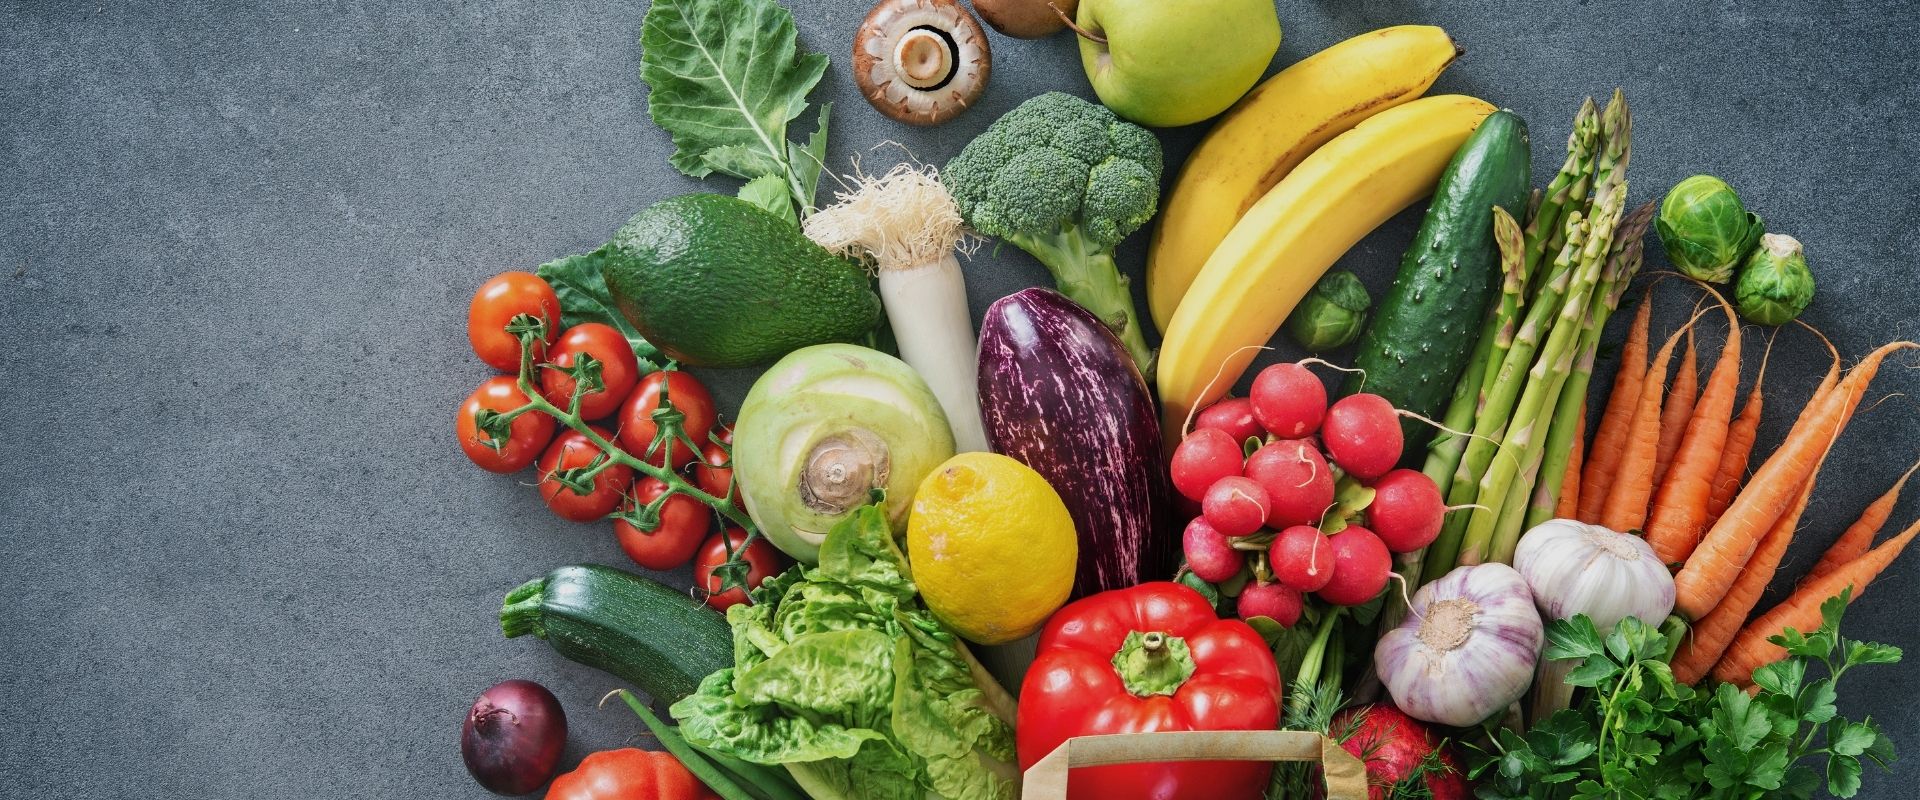 脫水蔬菜和蔬菜干有什么區別